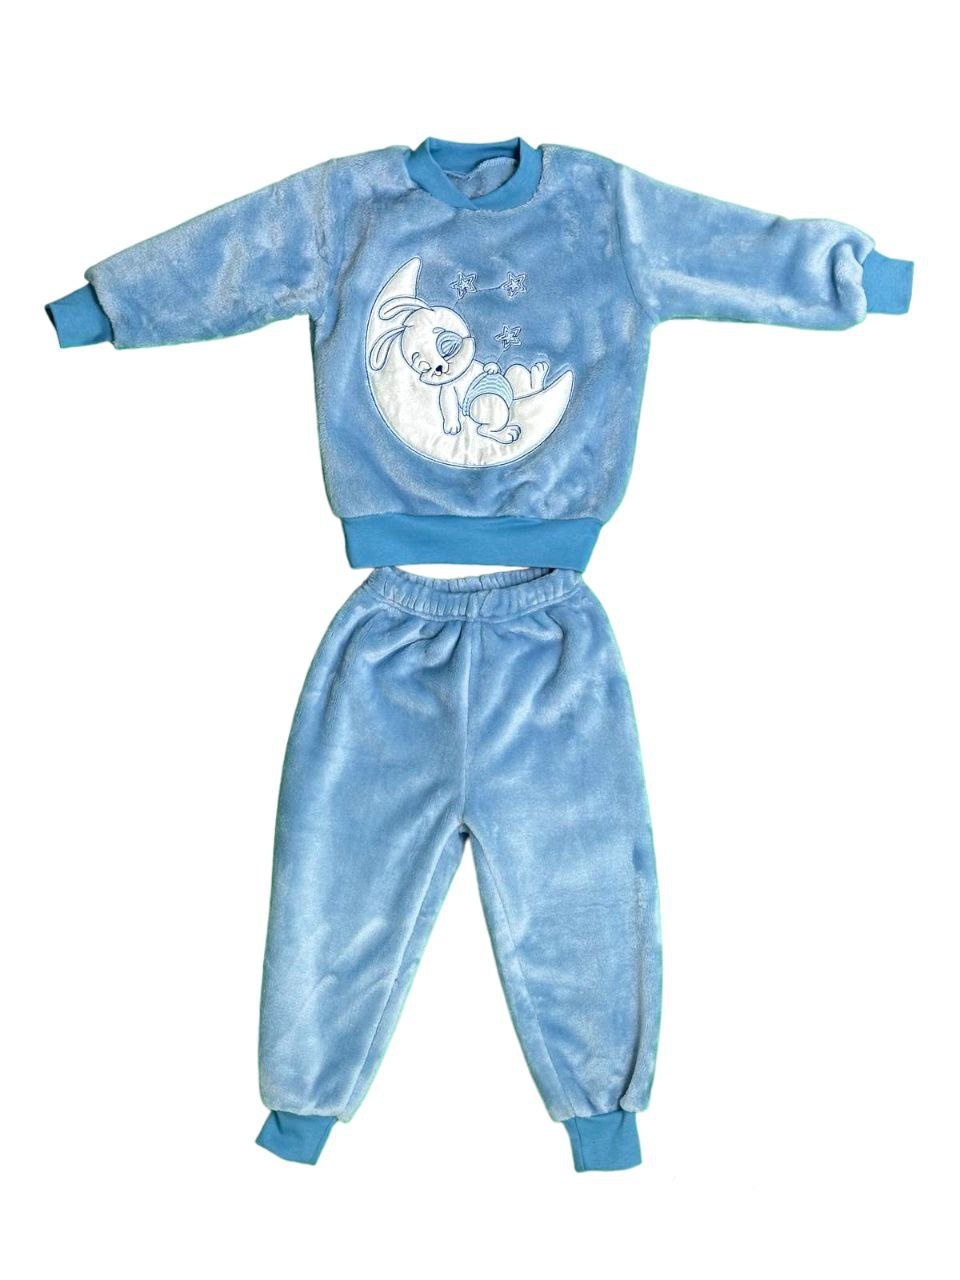 Детские трикотажные пижамы для мальчика. Пижама однотонная рваная махра с вышивкой голубого цвета. ТМ «Пташка Украина»